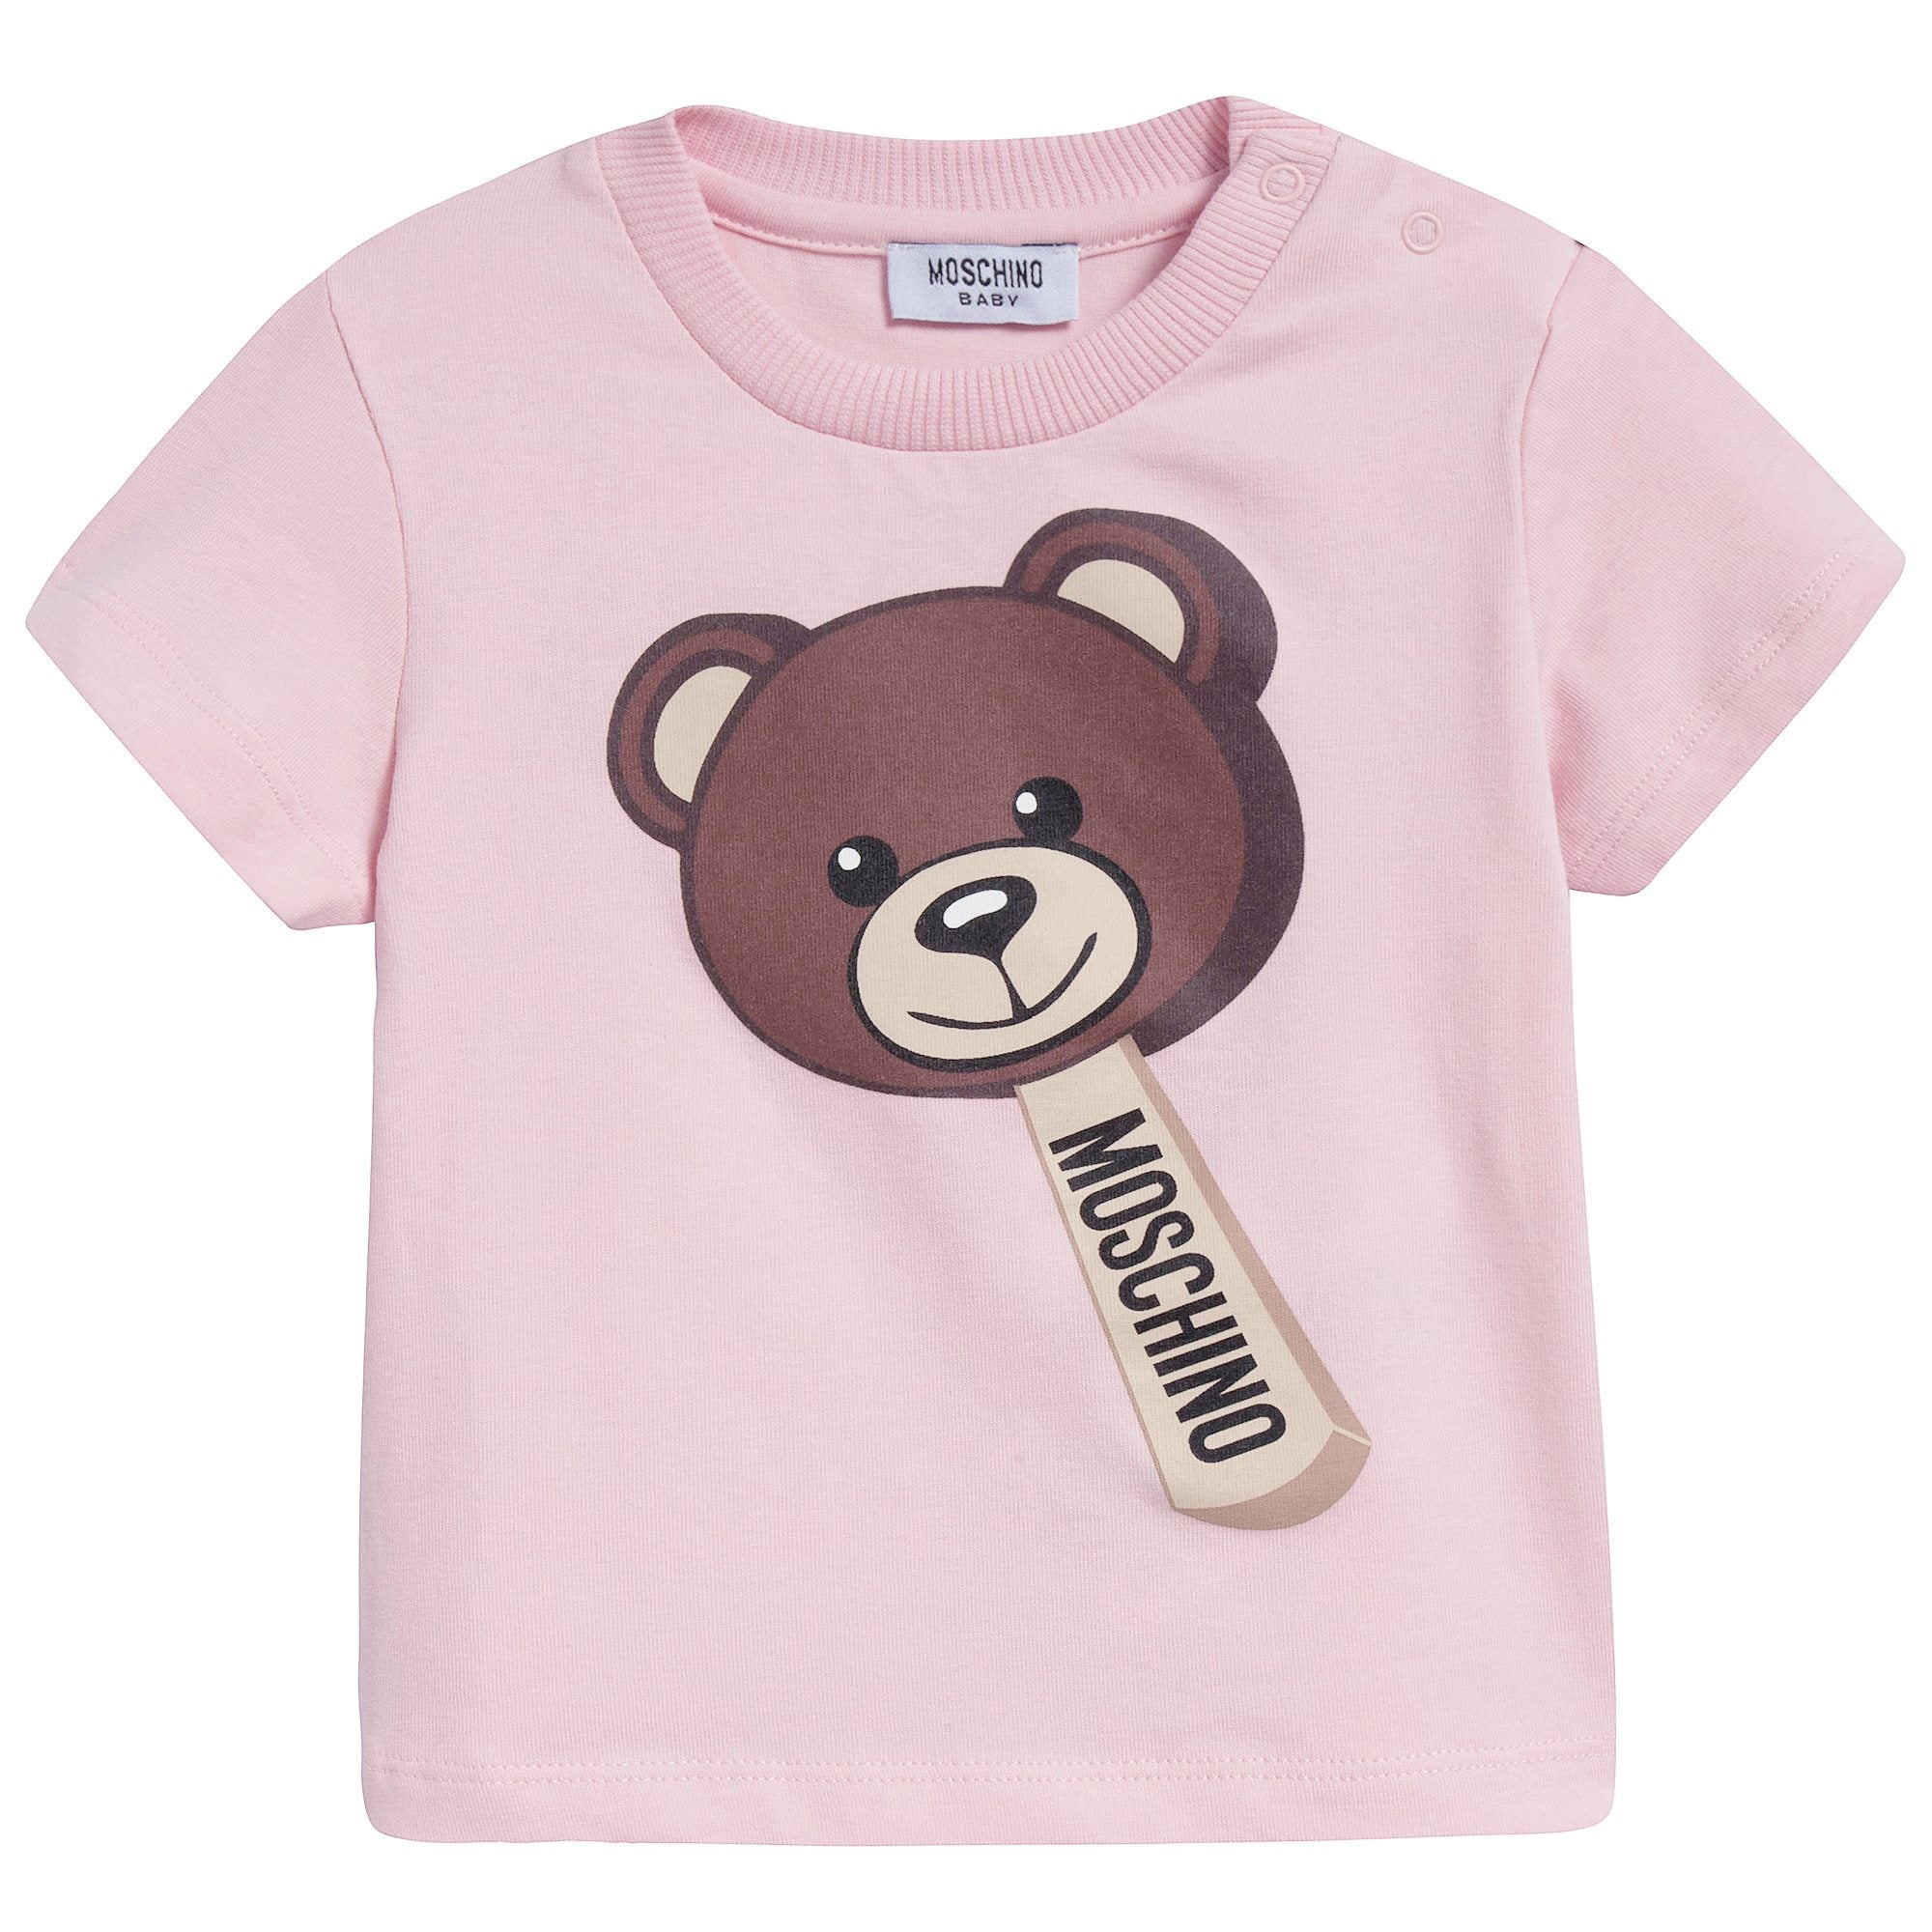 Baby Girls Sweet Rose Cotton T-shirt